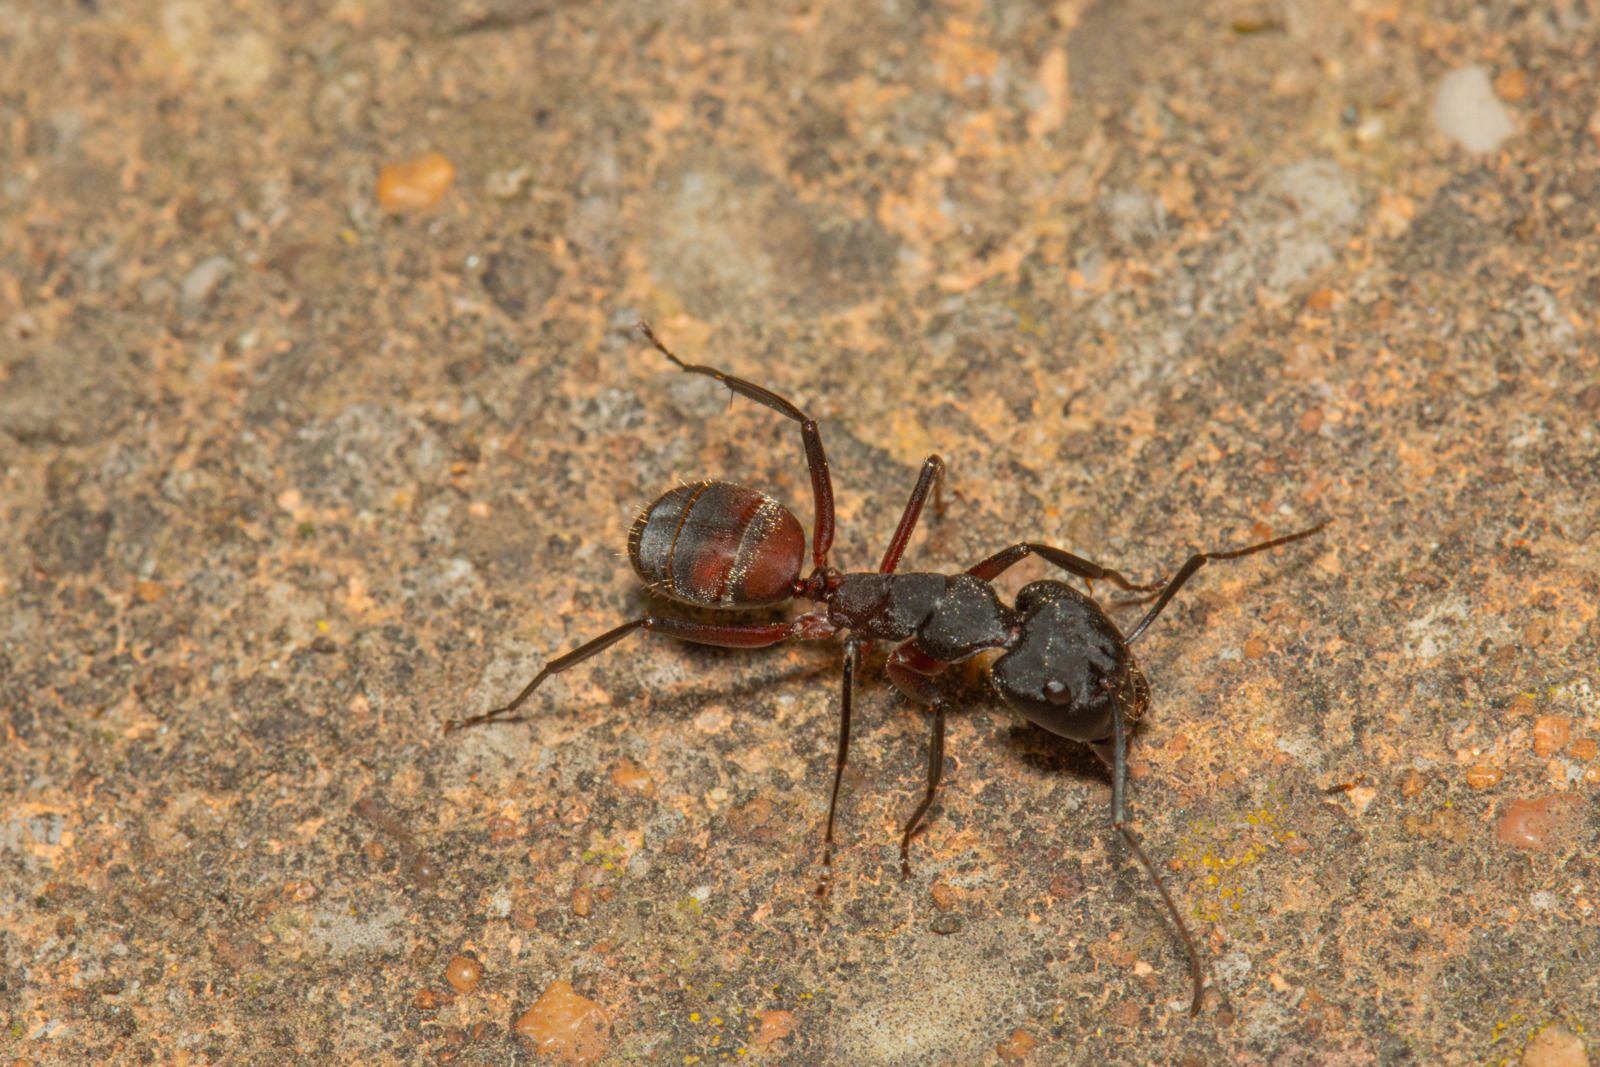 Camponotus cruentus